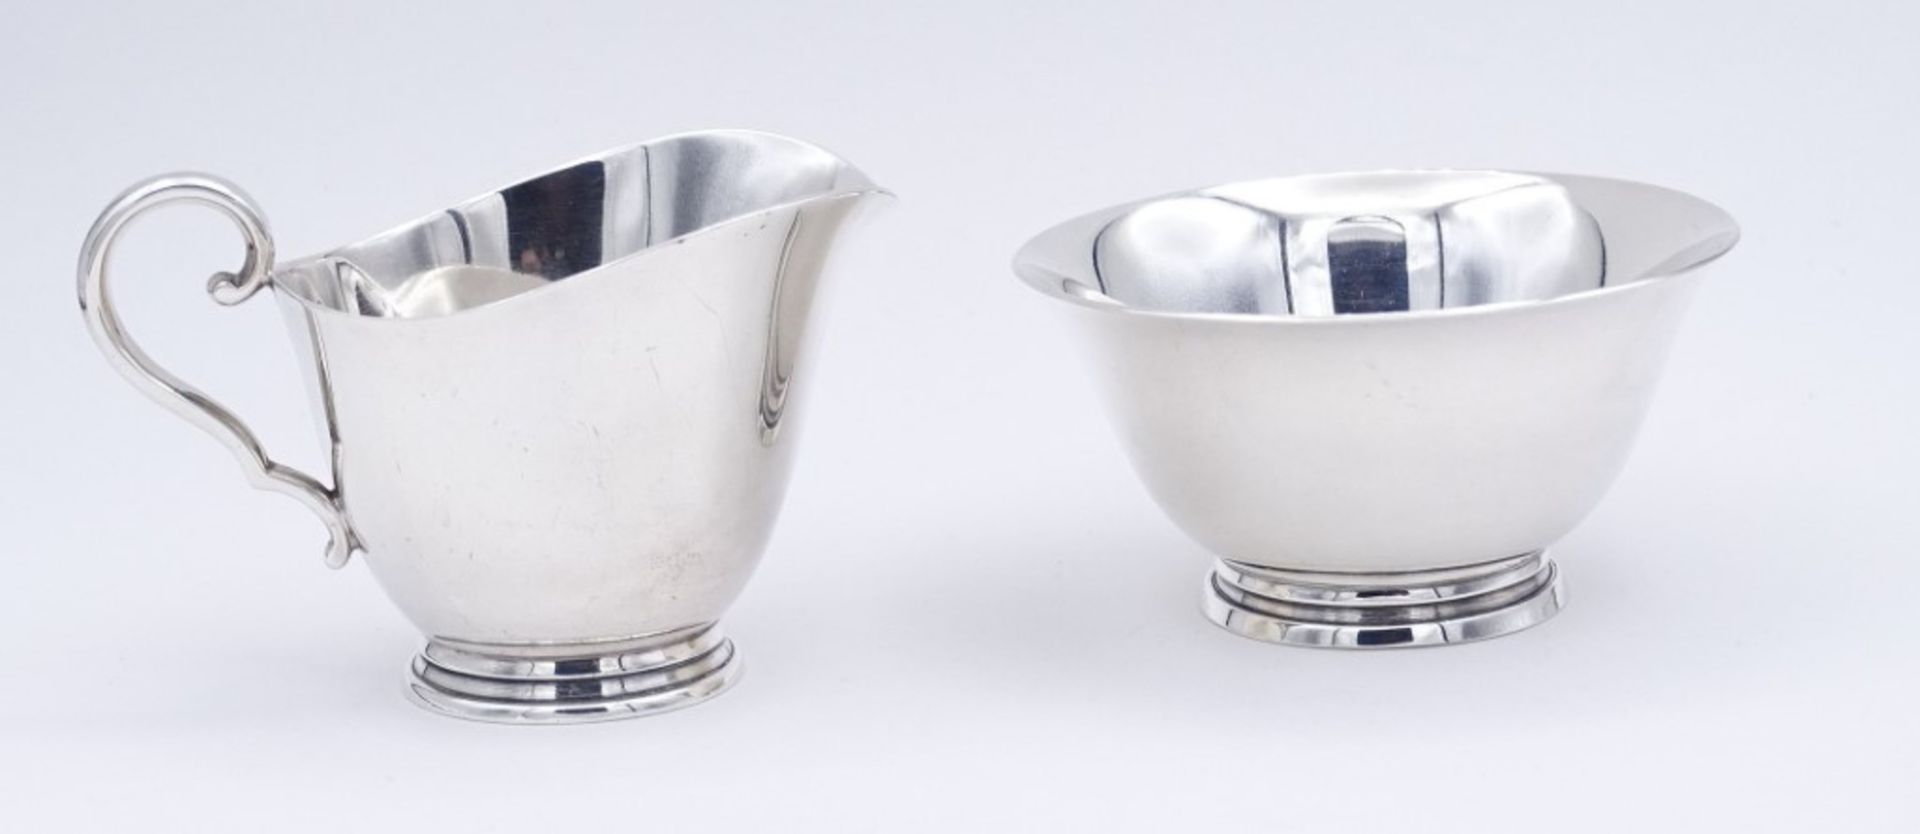 Milch + Zucker,Silber, C.C. Hermann Denmark,Sterling Silber 0.925, H- 4 - 5,5cm, zus.142g. - Image 3 of 6